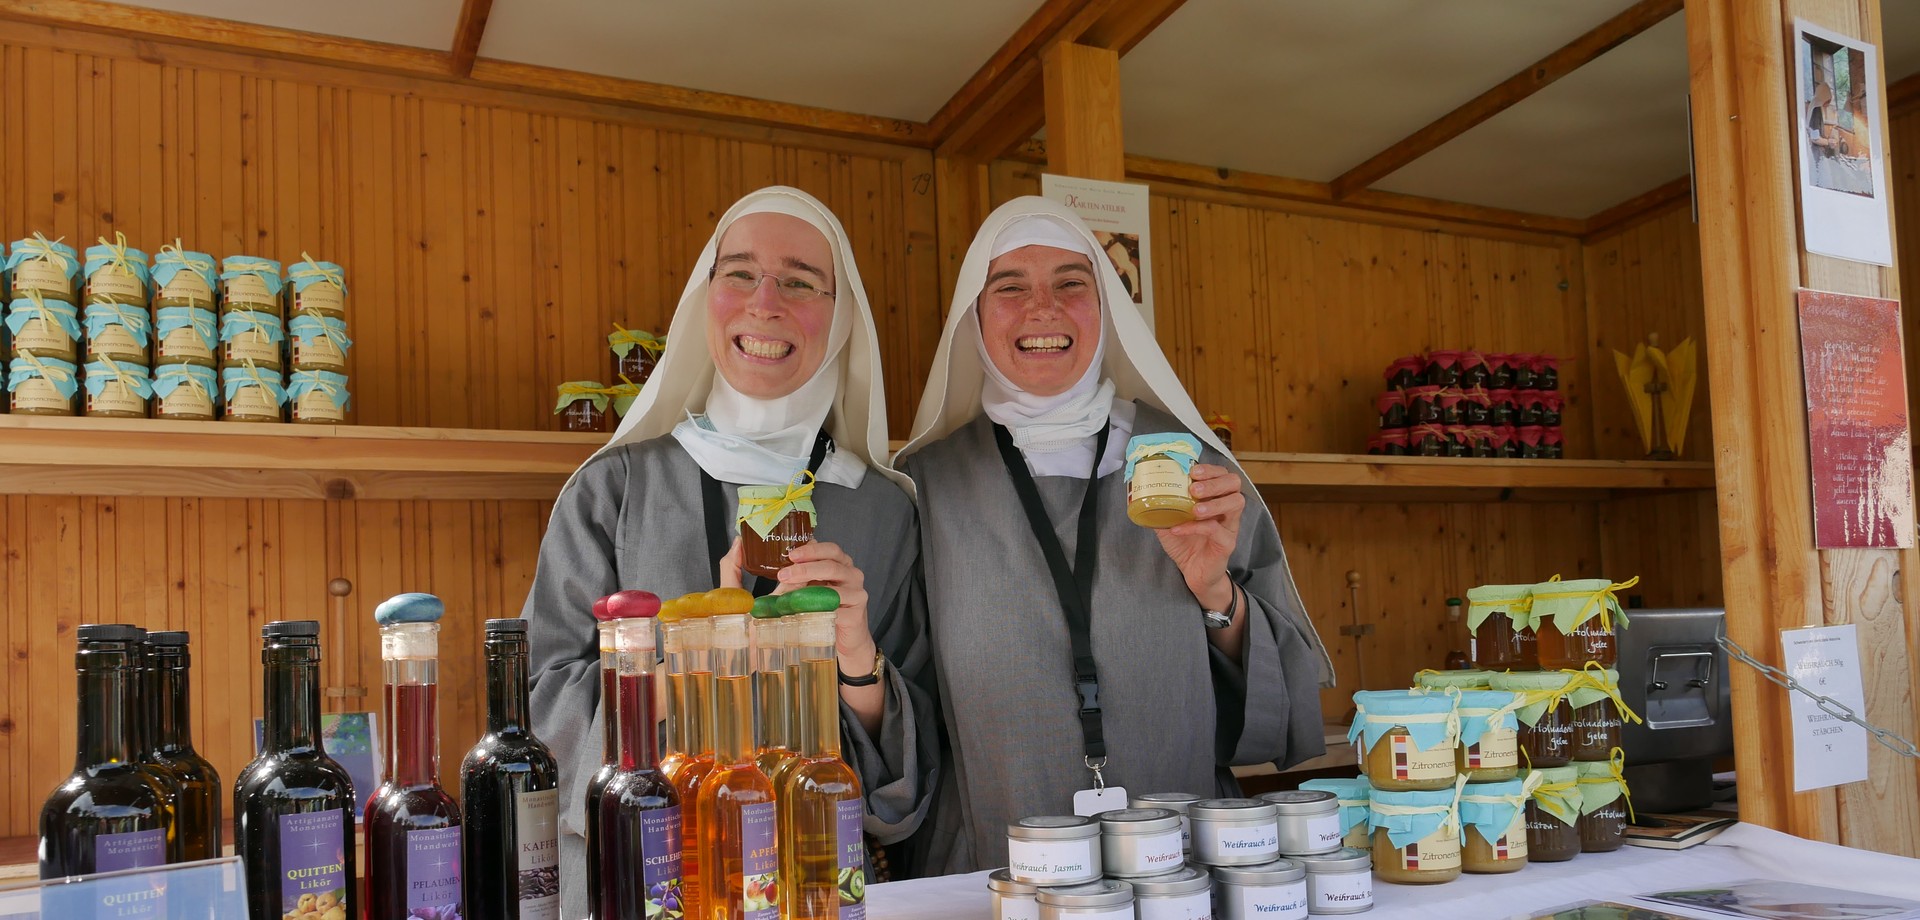 Auf dem Foto sieht man die Ordensschwestern am Klostermarktstand.

Foto: LWL/Buterus